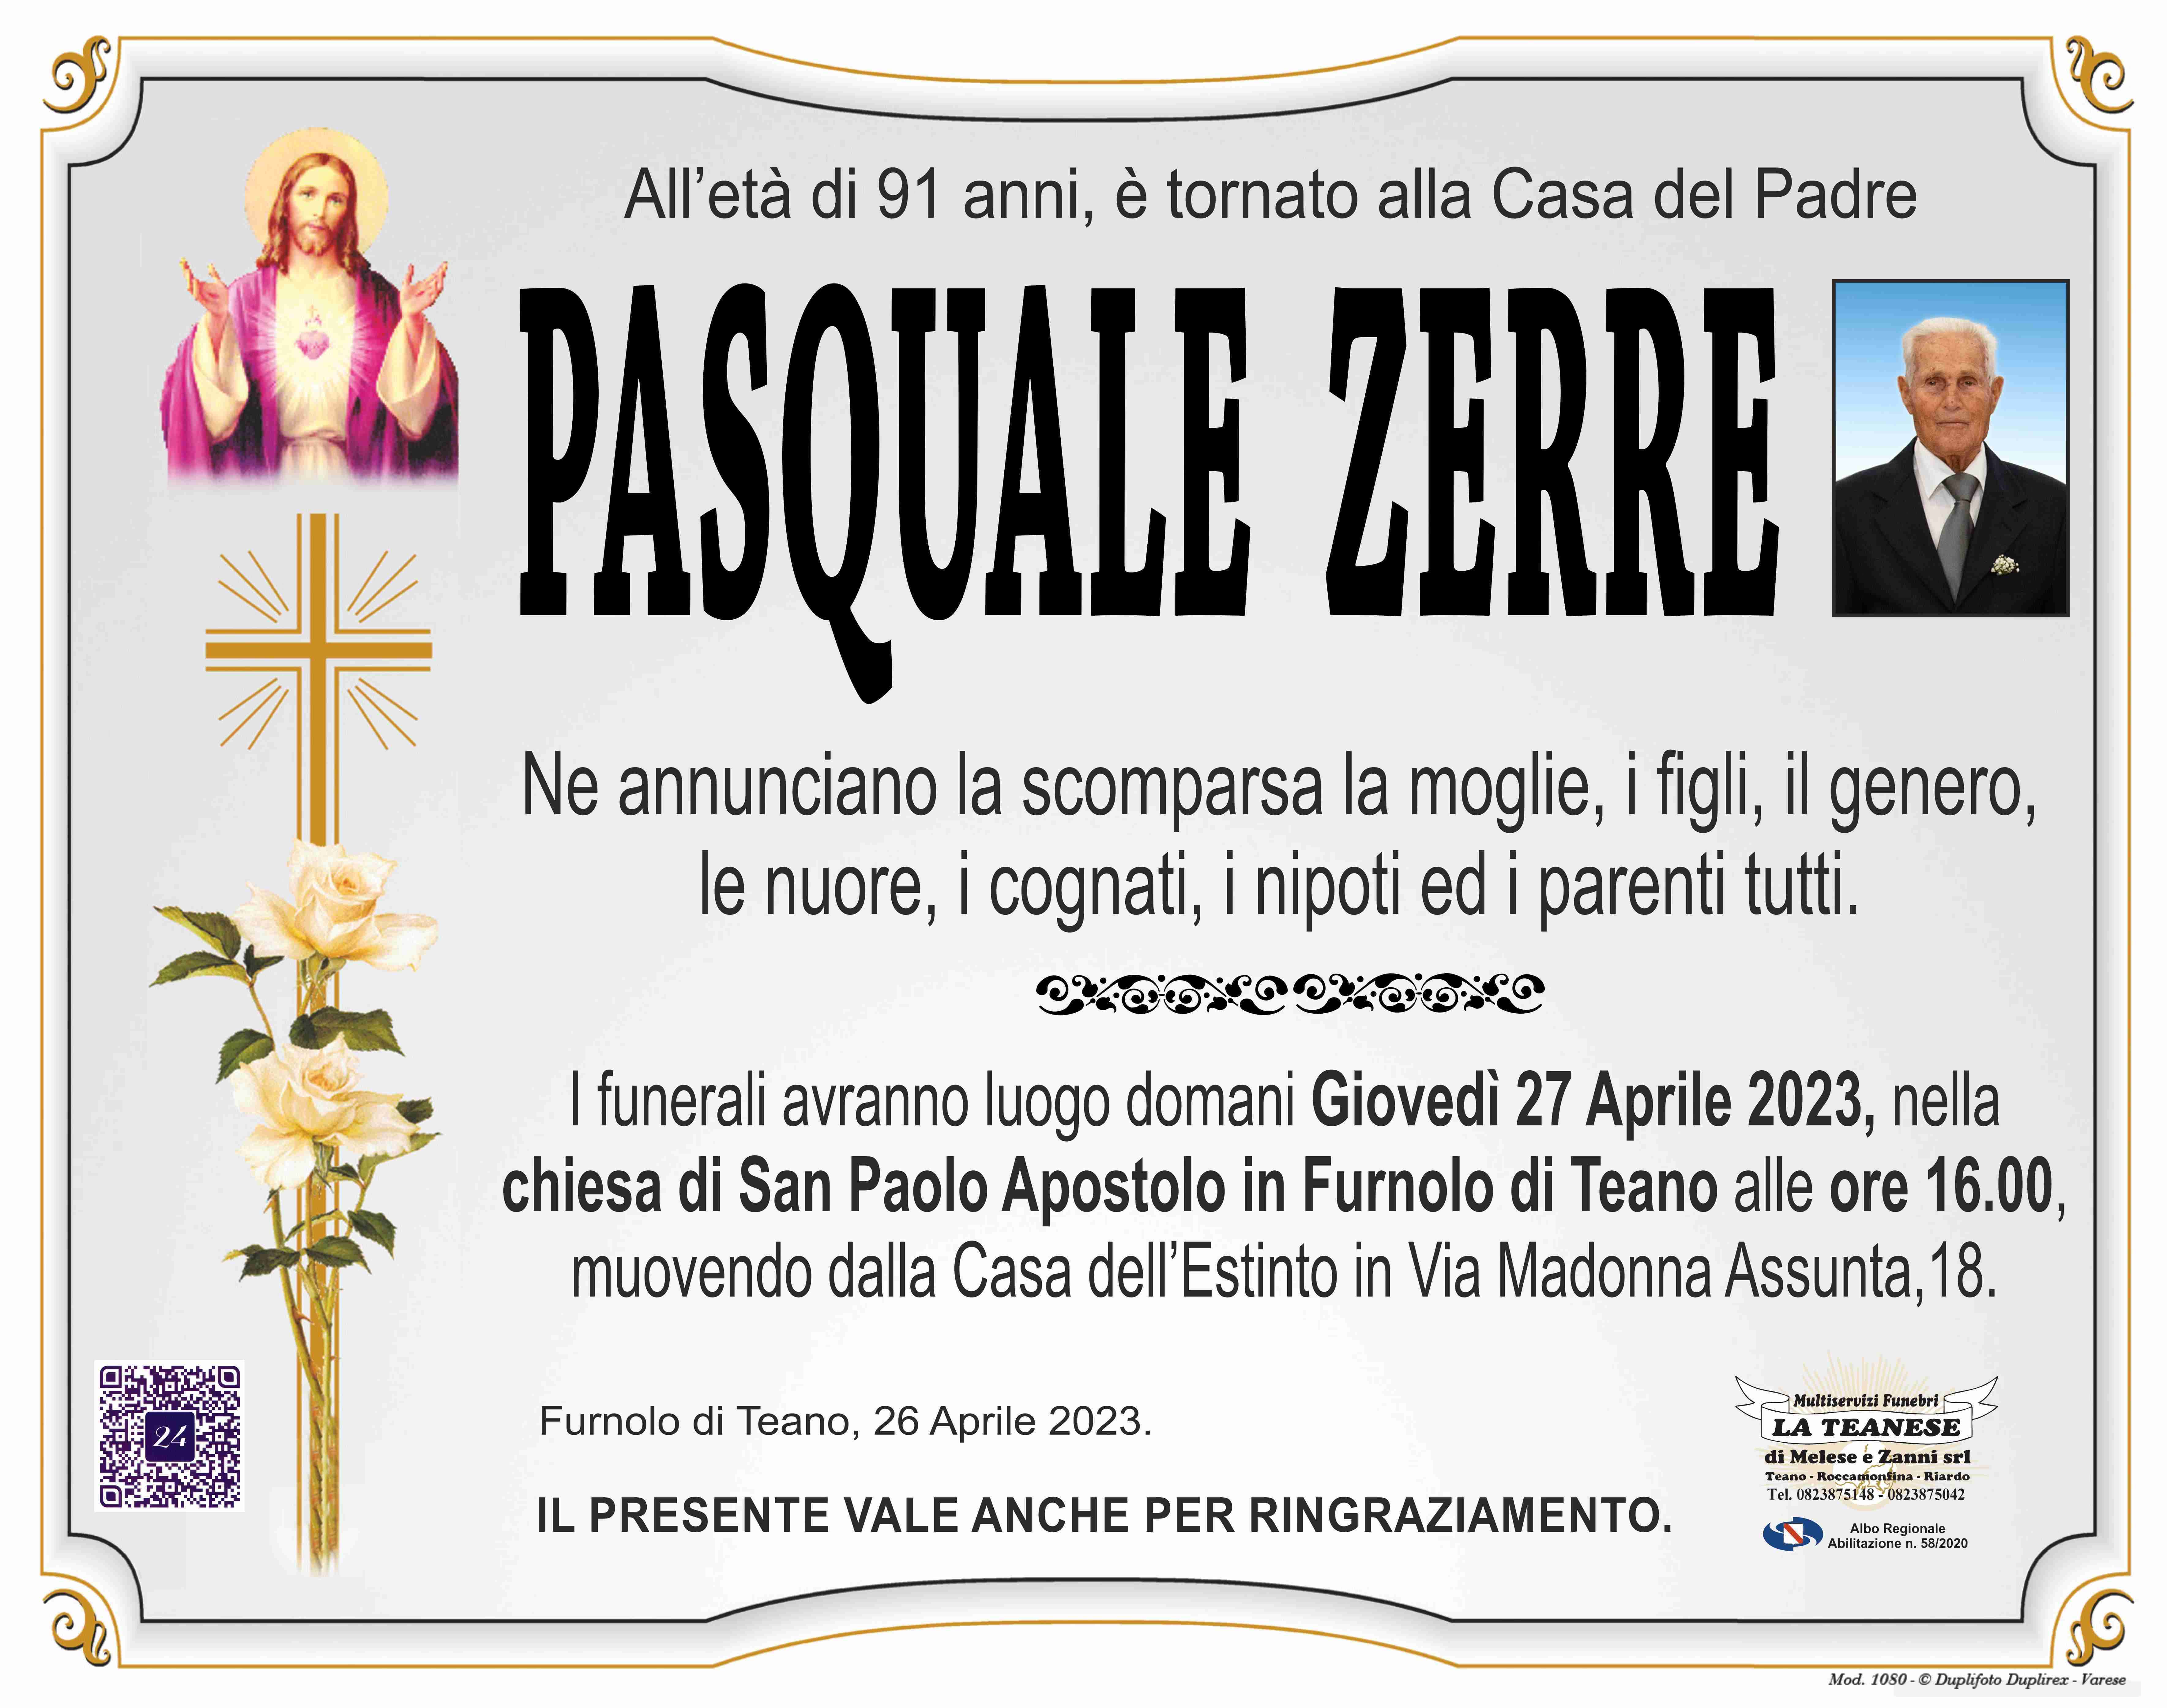 Pasquale Zerre